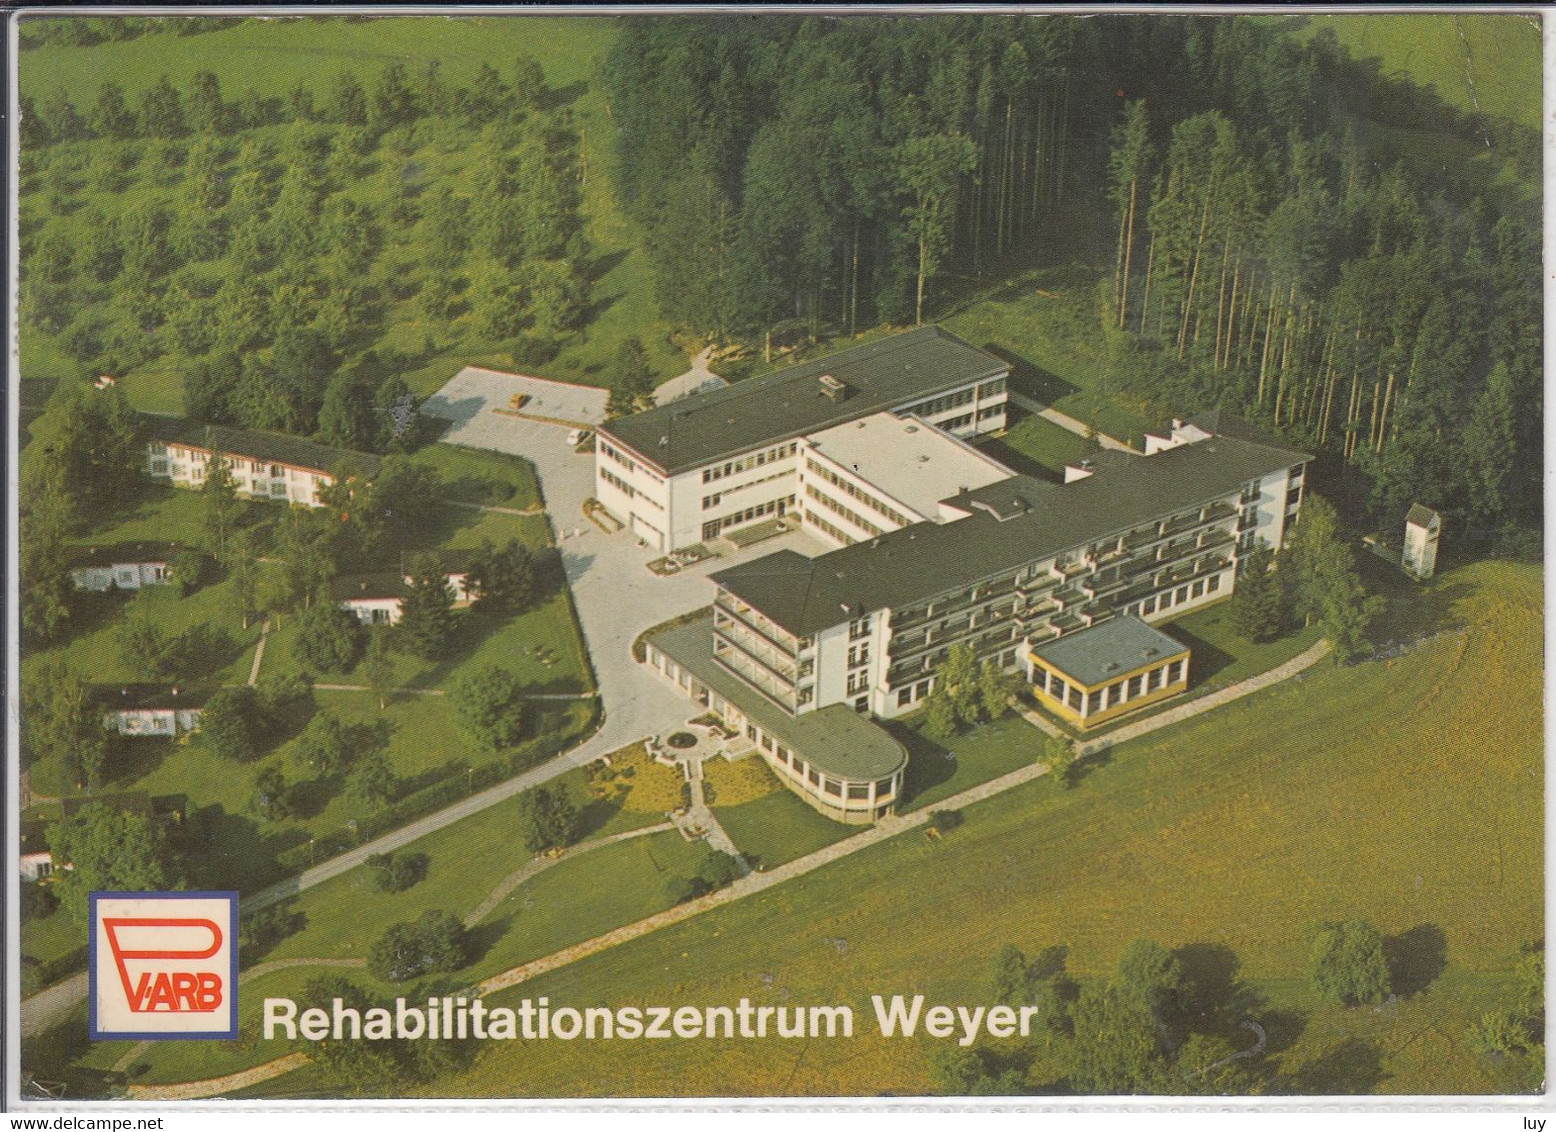 WEYER - Rehabilitationszentr Der PVARB, Luftbild, Fliegeraufnahme - Weyer